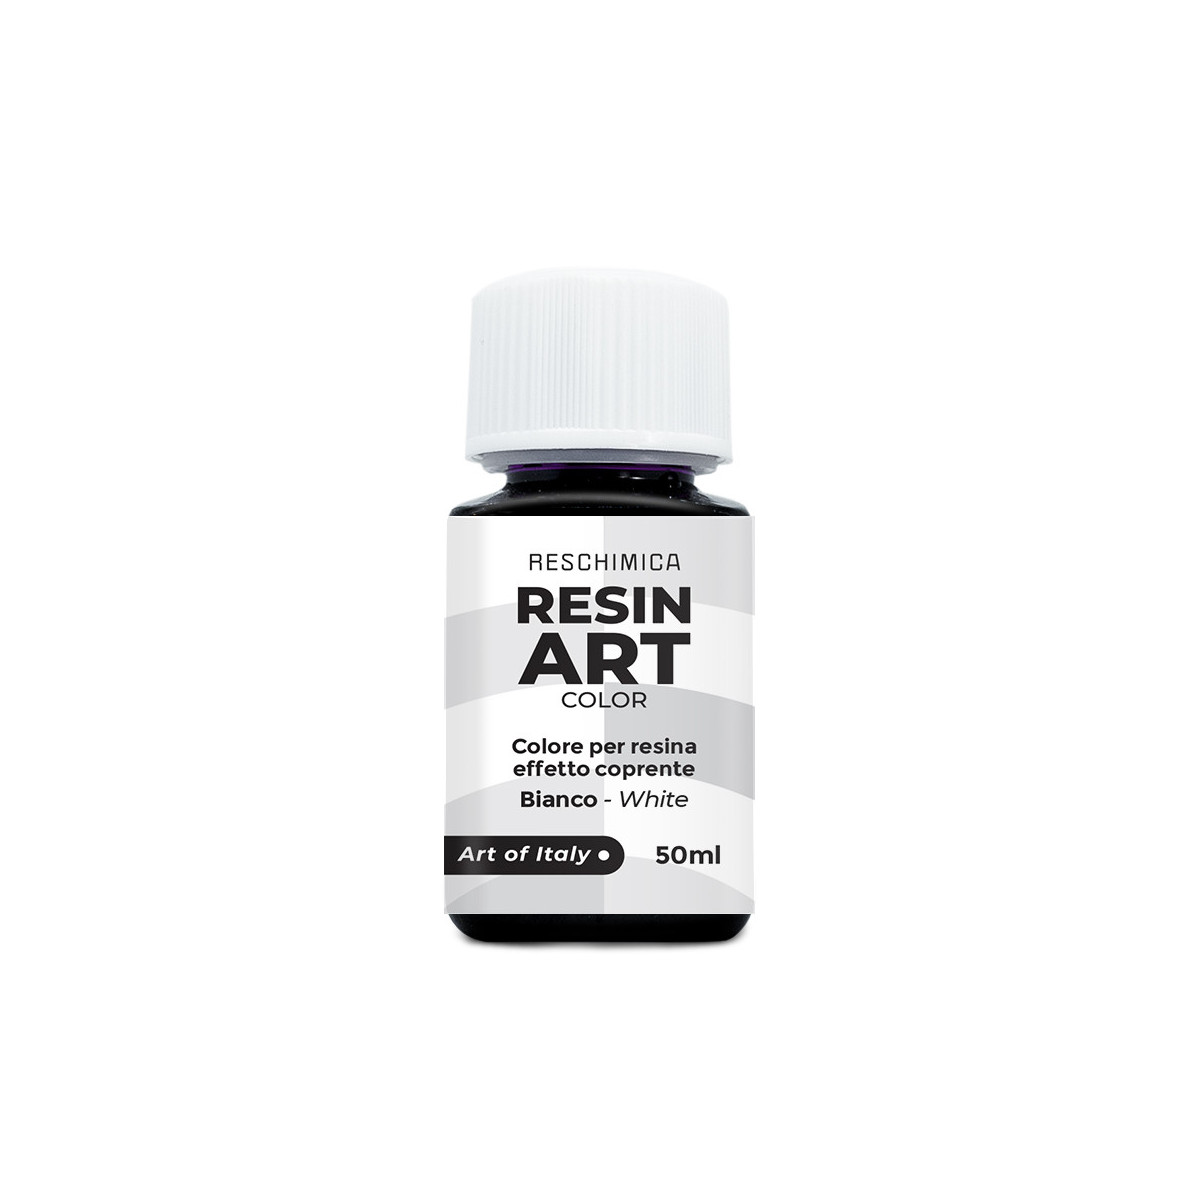 RESIN ART COLOR - colores intensos y brillantes para resina en 5 colores de 50 ml (efecto de cobertura)